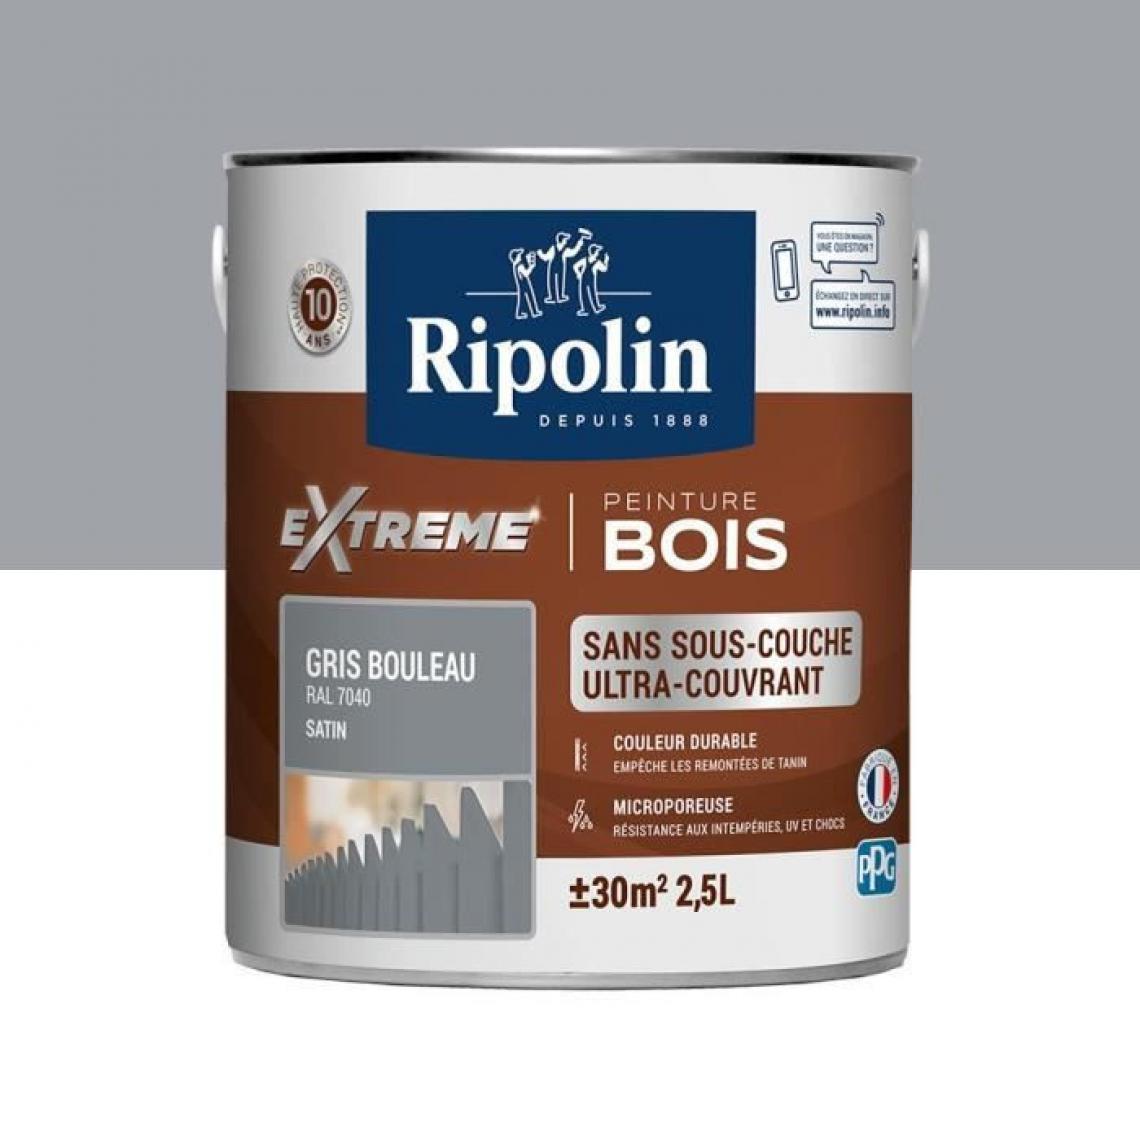 Ripolin - RIPOLIN Peinture pour pour Bois Interieur + Exterieur - Gris Bouleau Ral 7040 Satin, 2,5L - Peinture & enduit rénovation